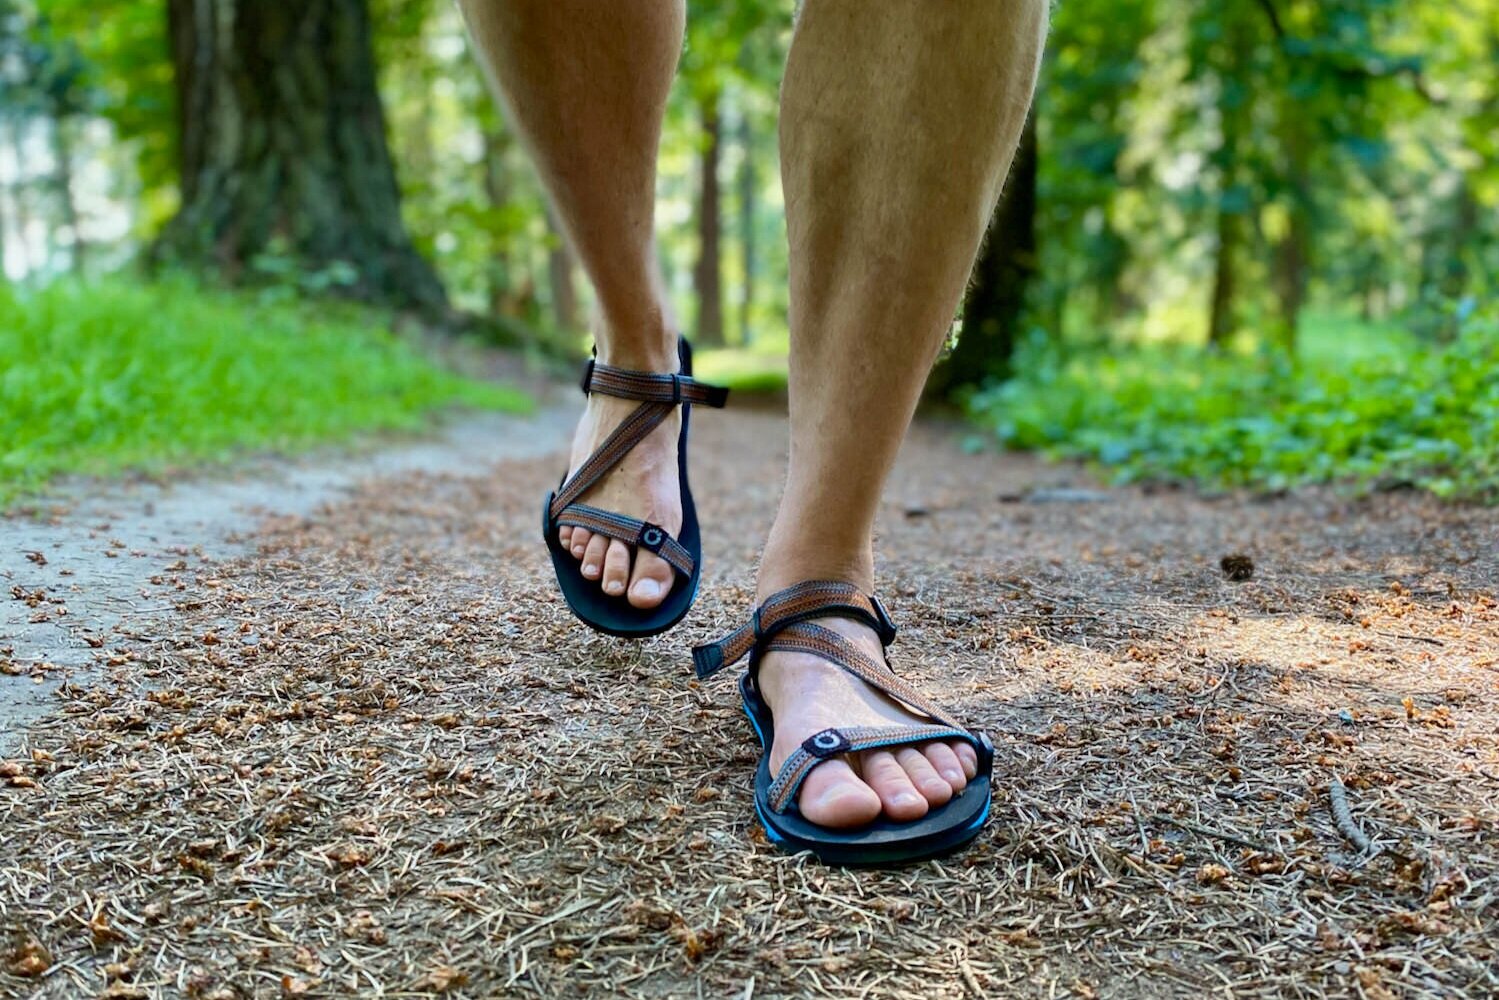 NORTIV 8 Mens Outdoor Walking Sandals Comfortable Lightweight Beach Sandal